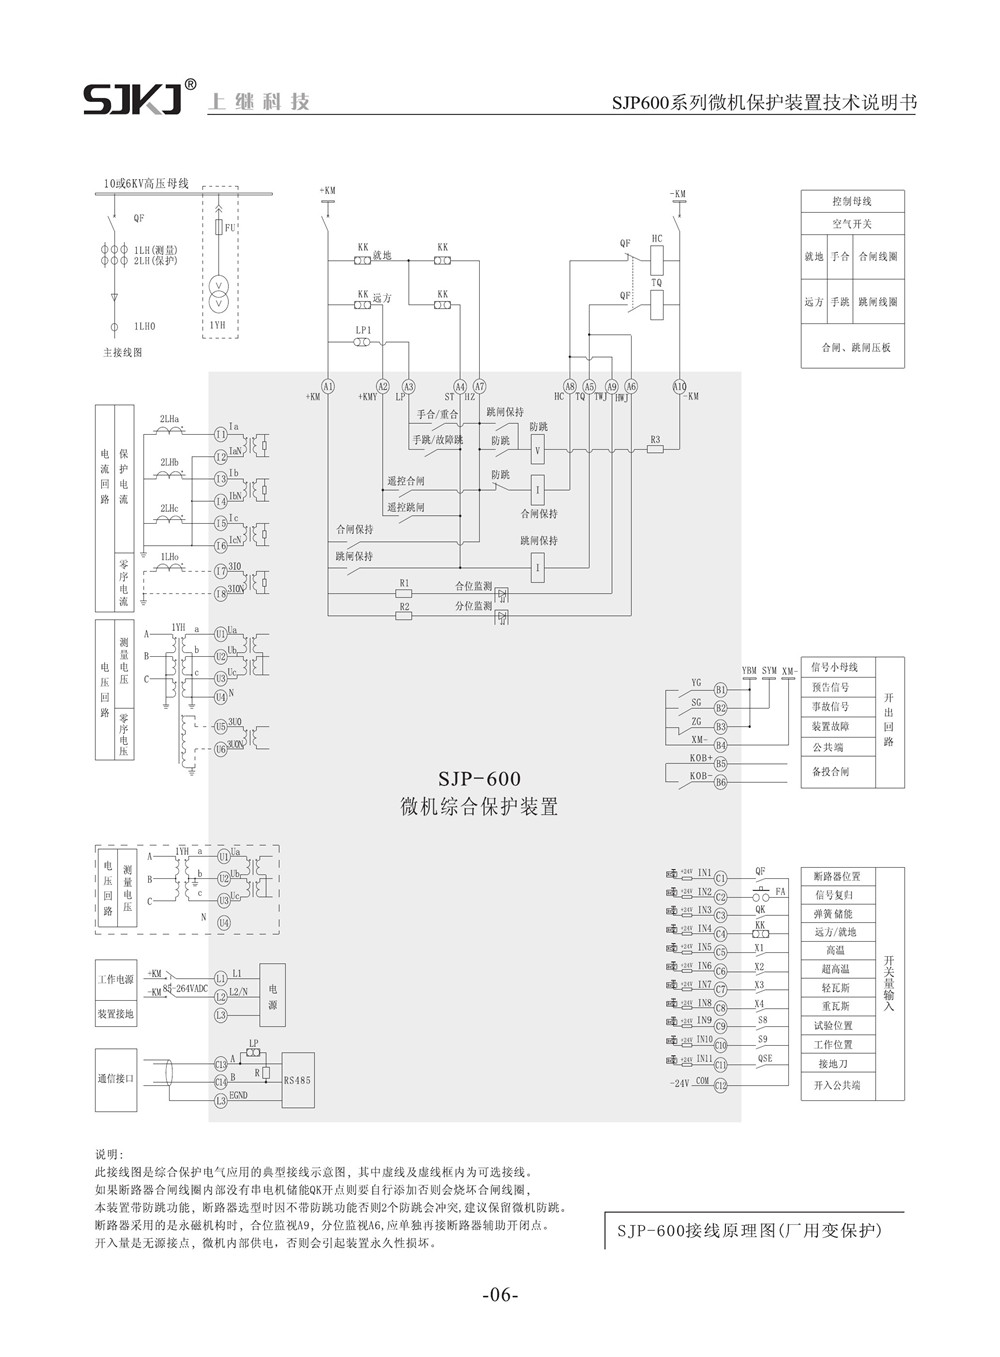 SJP-600微机综合保护装置产品参数图片三